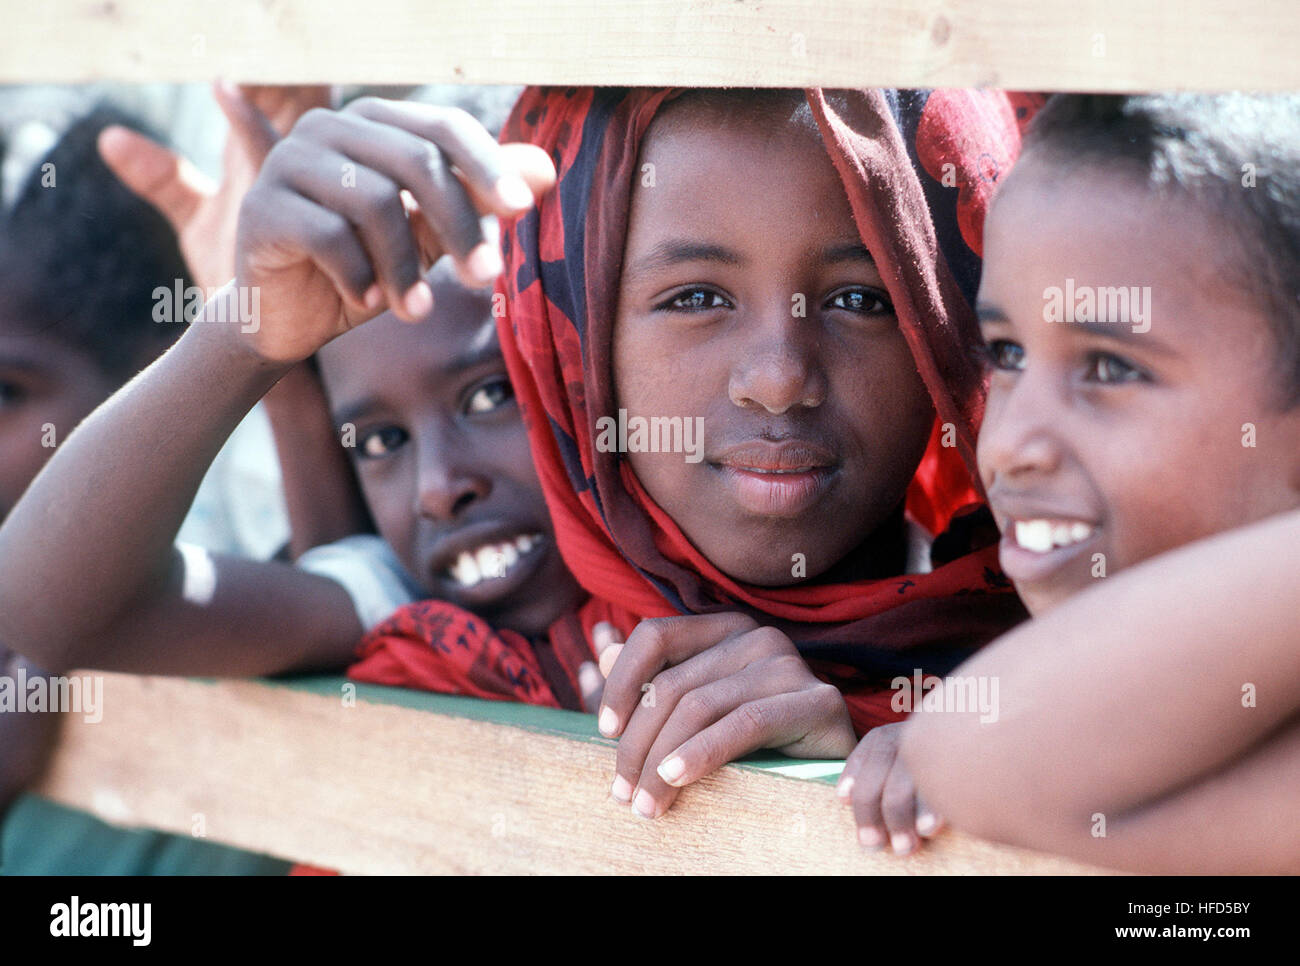 Los niños somalíes ver miembros del Batallón móvil de Construcción Naval 1 (NMCB-1) mientras trabajan para mejorar una escuela local durante el esfuerzo de socorro multinacional operación RESTAURAR LA ESPERANZA. Los niños somalíes Foto de stock